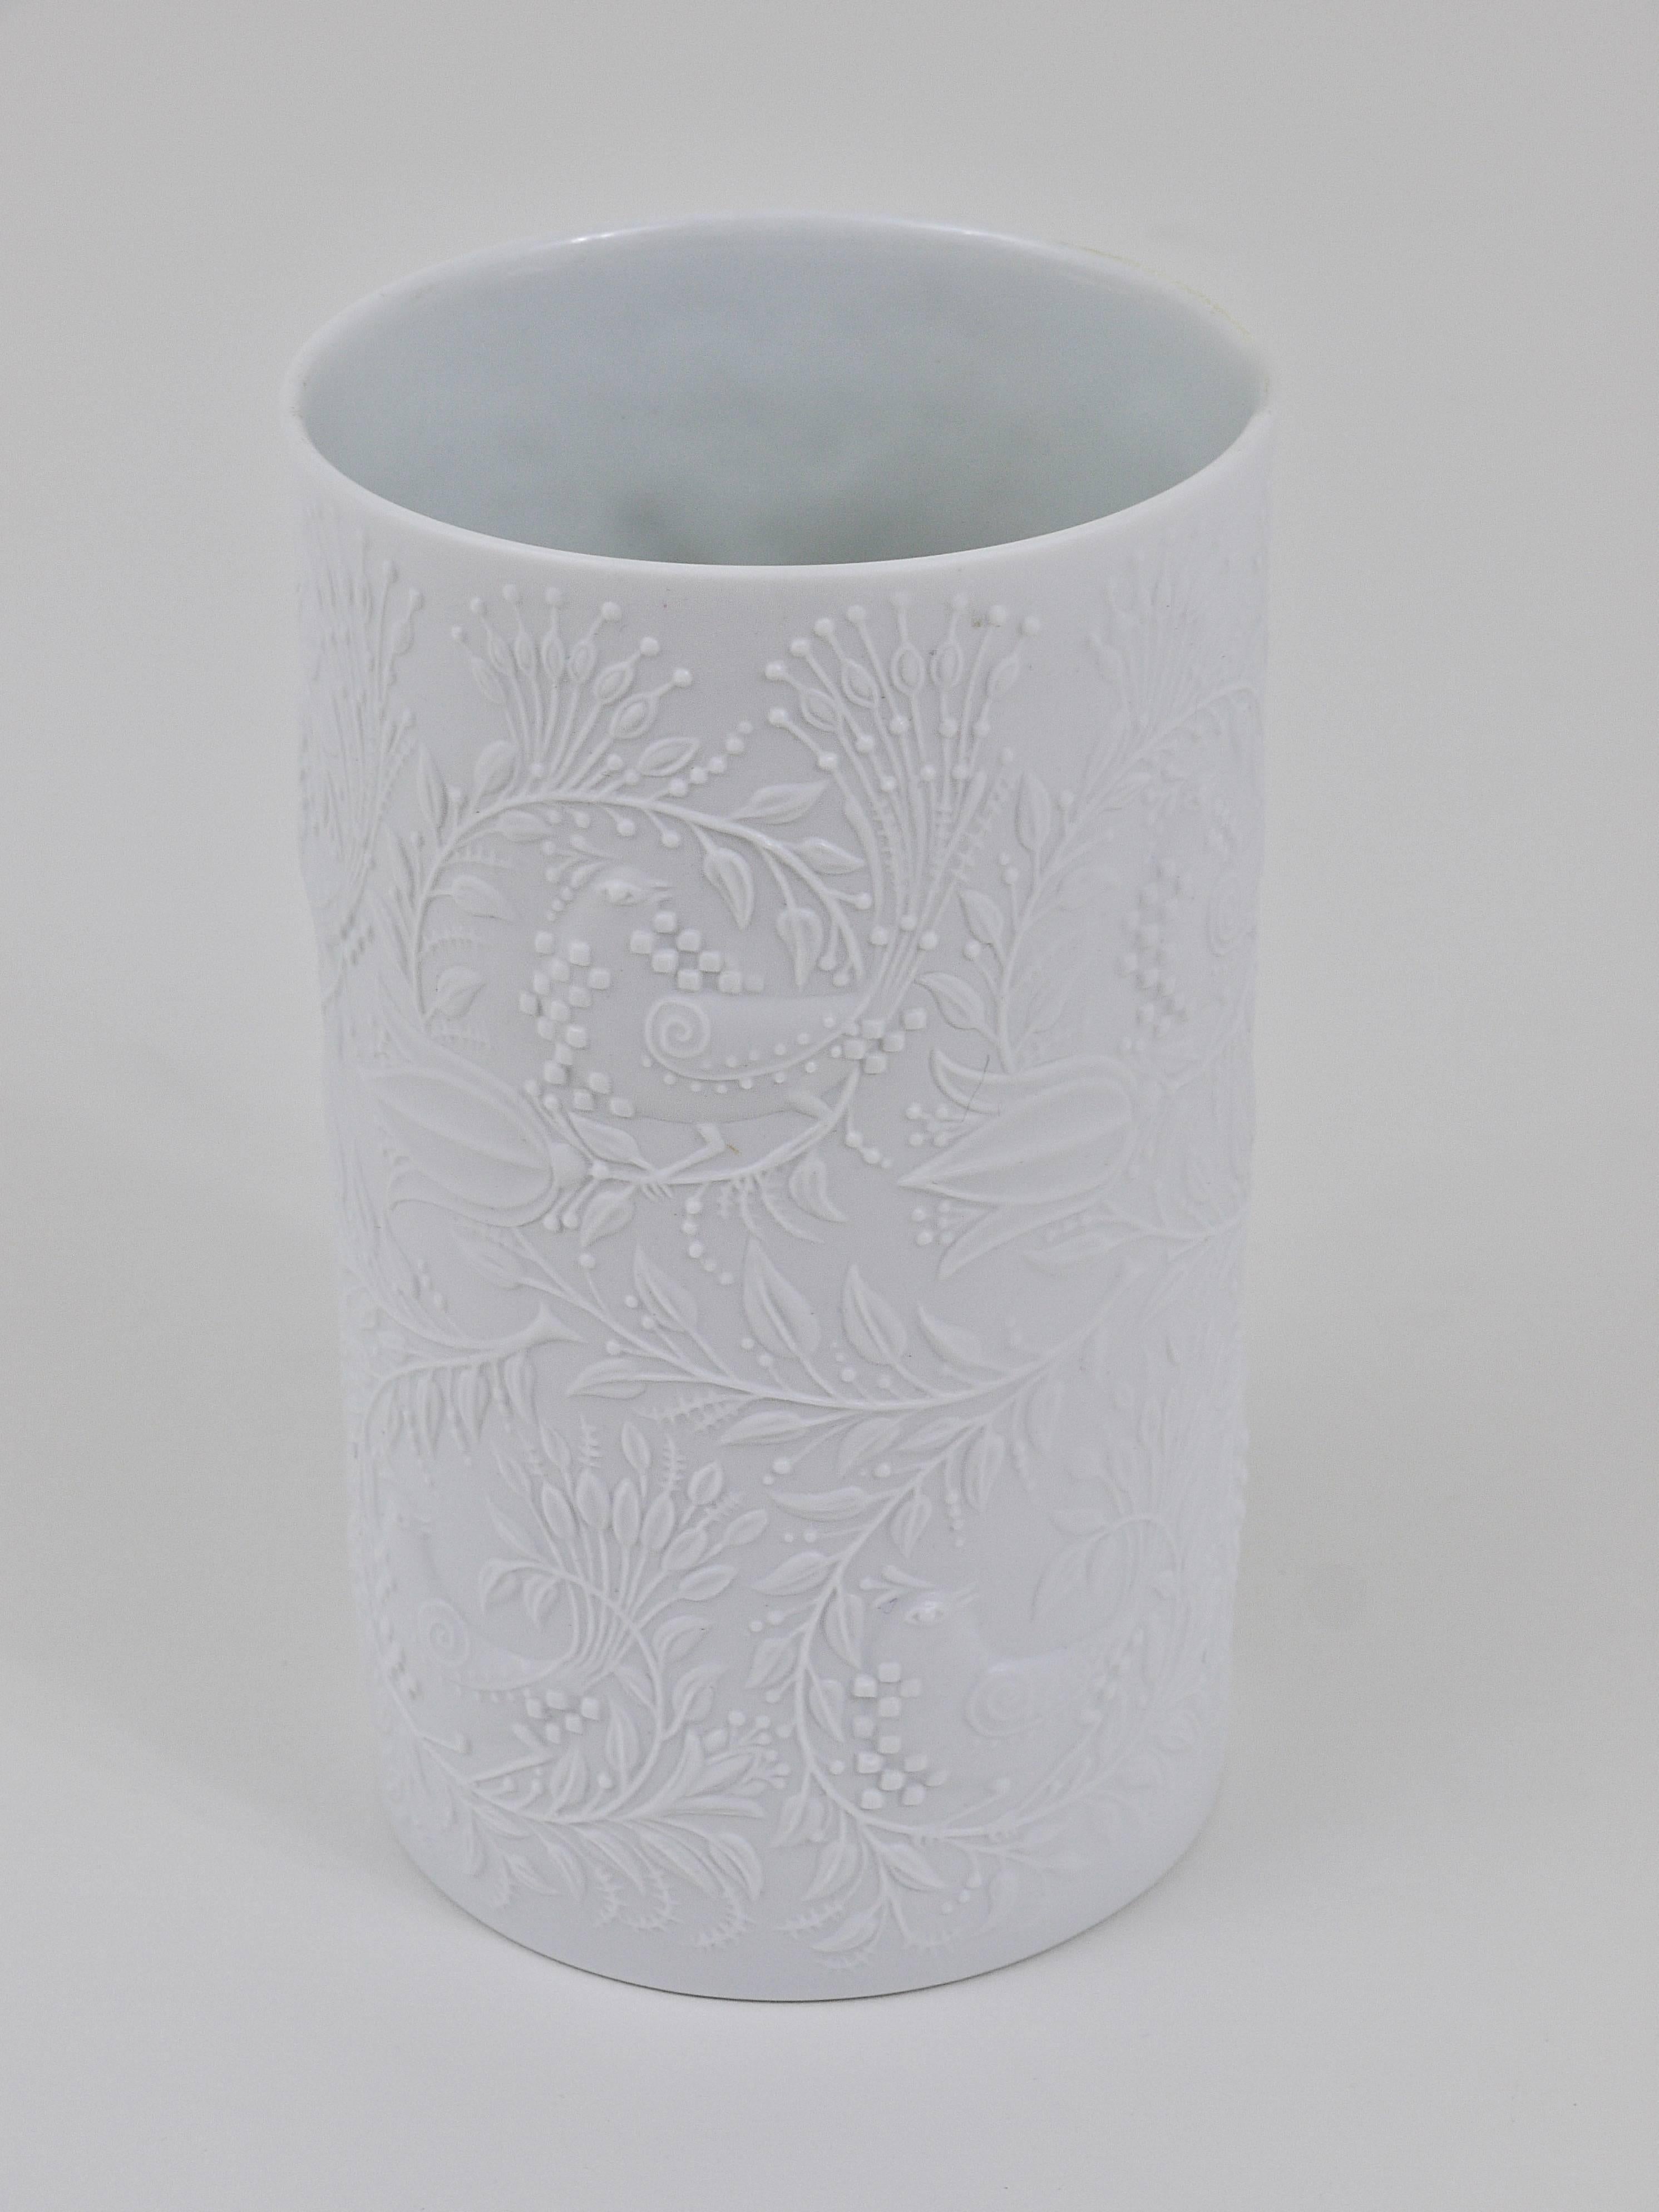 Magnifique vase en porcelaine op-art à relief blanc mat des années 1960, conçu par Bjorn Wiinblad et exécuté par Rosenthal Studio-Line, Allemagne. En très bon état.